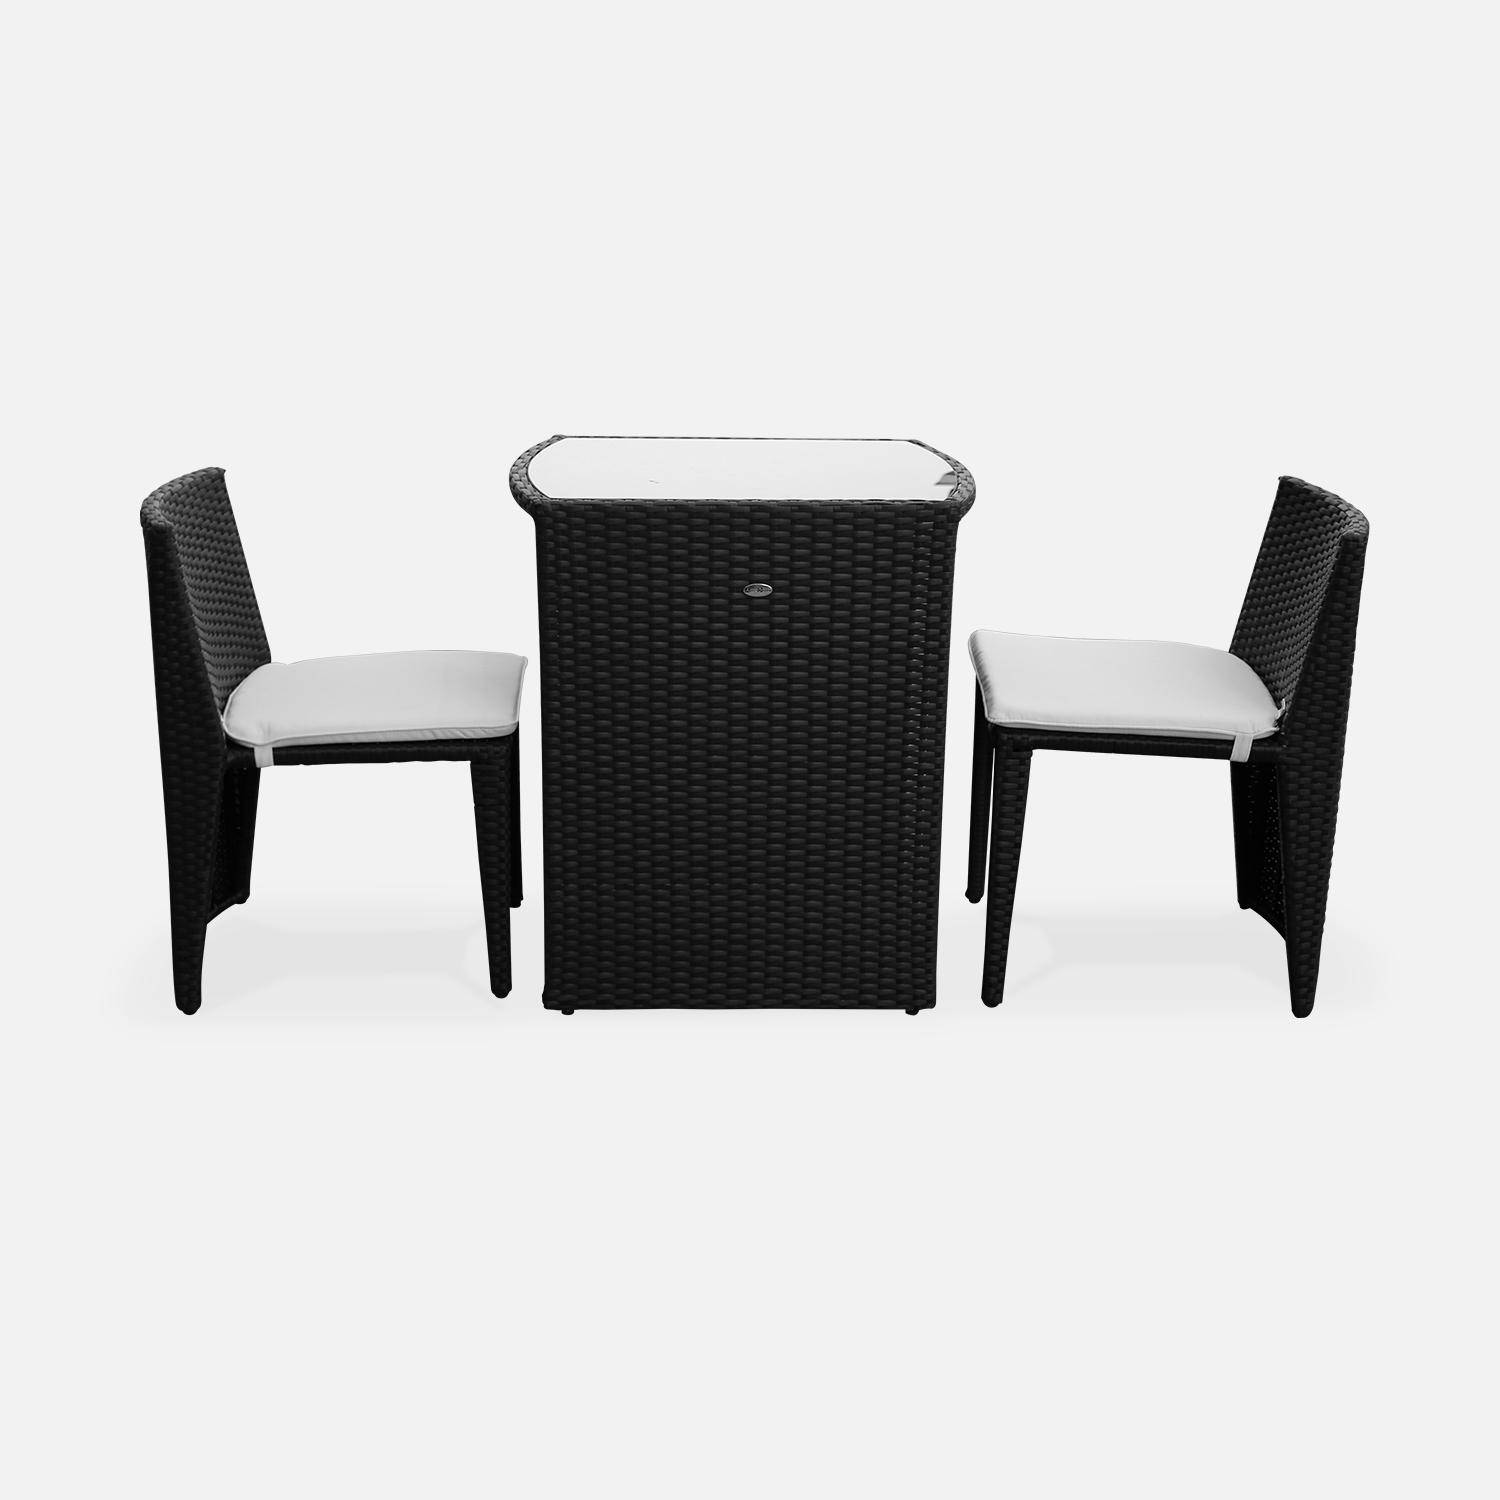 Conjunto de mesa y sillas de jardin ratan sintetico - Negro / marron, cojines crudo - 2 plazas - Doppio Photo2